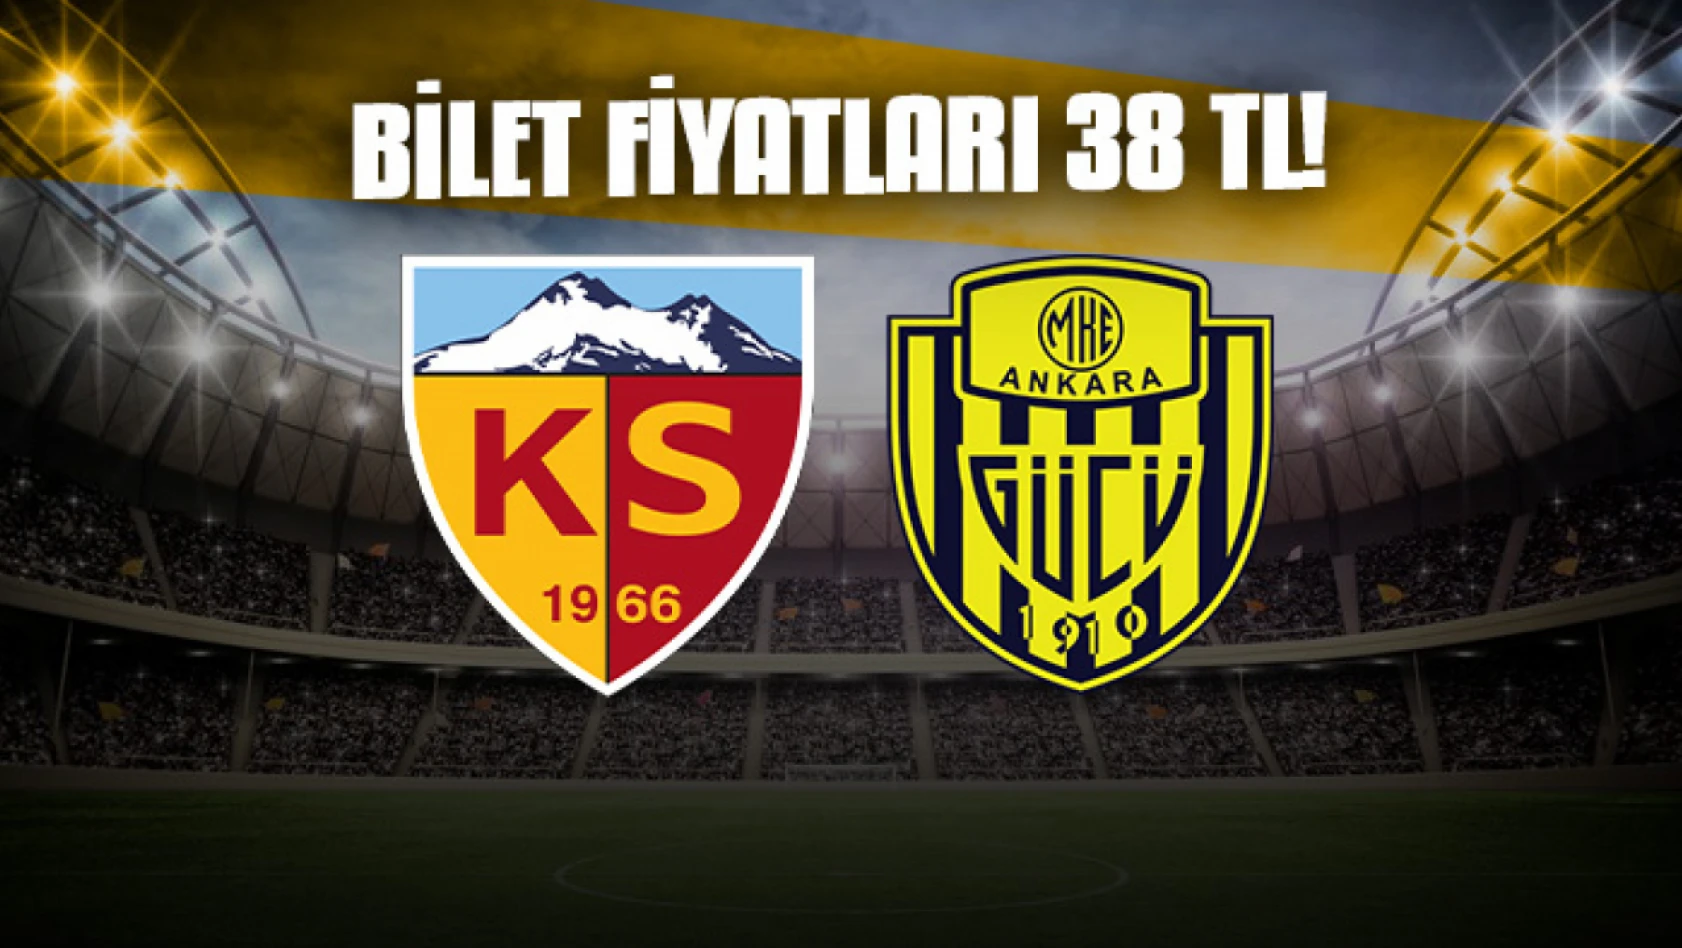 Kayserispor - Ankaragücü maçı biletleri 38 TL!